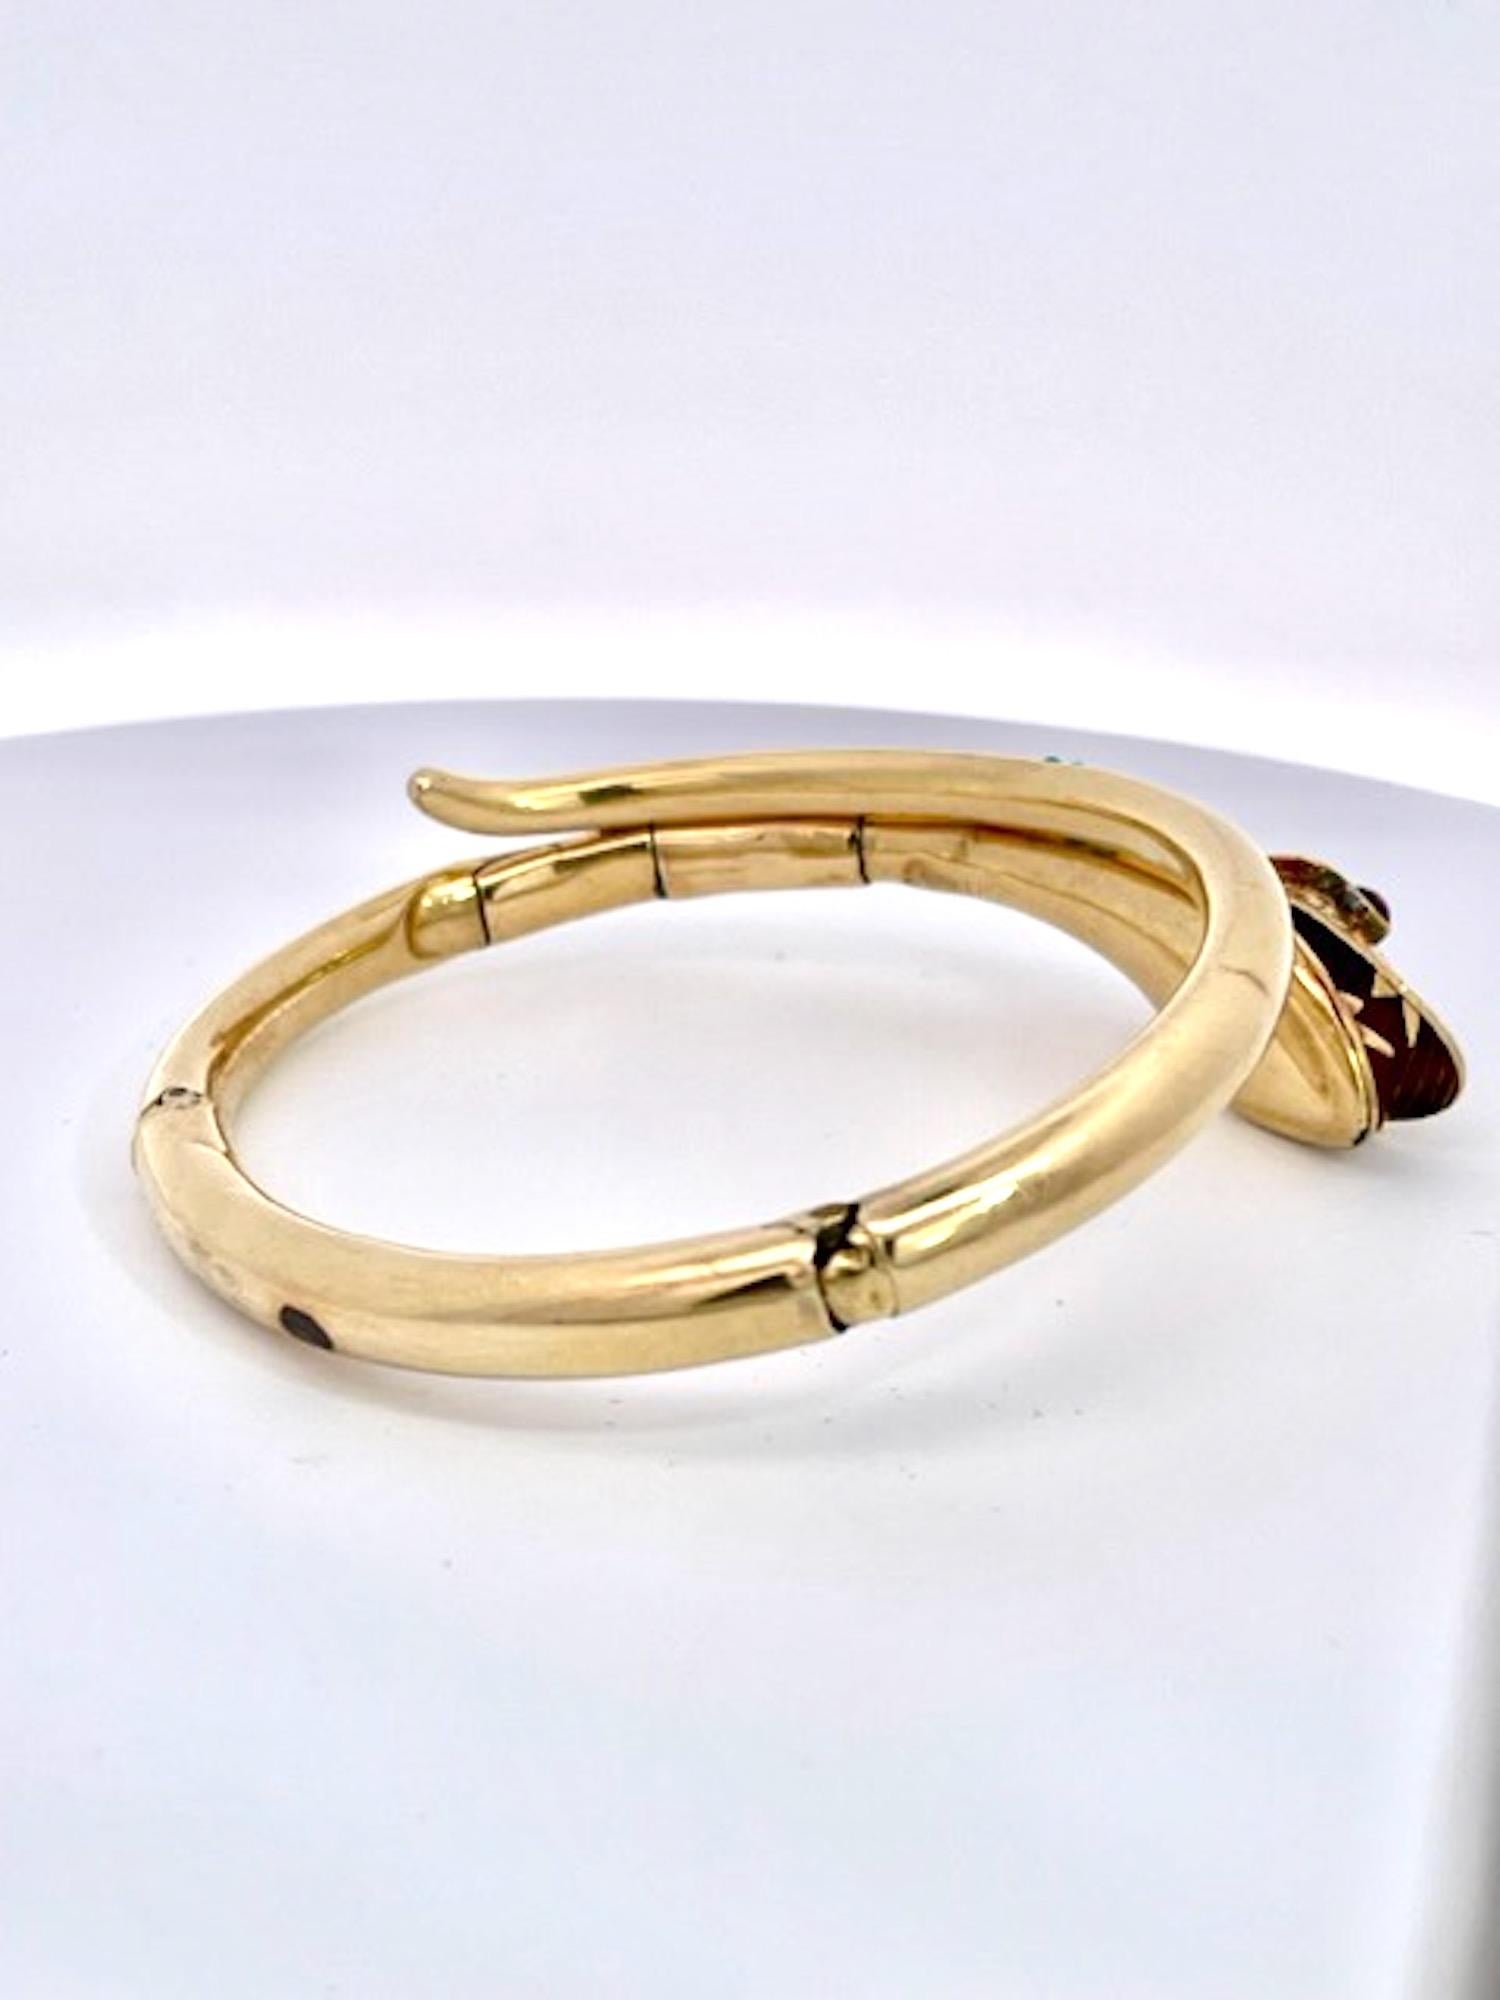 Women's or Men's 14K Yellow Gold Snake Bracelet Turquoise For Sale